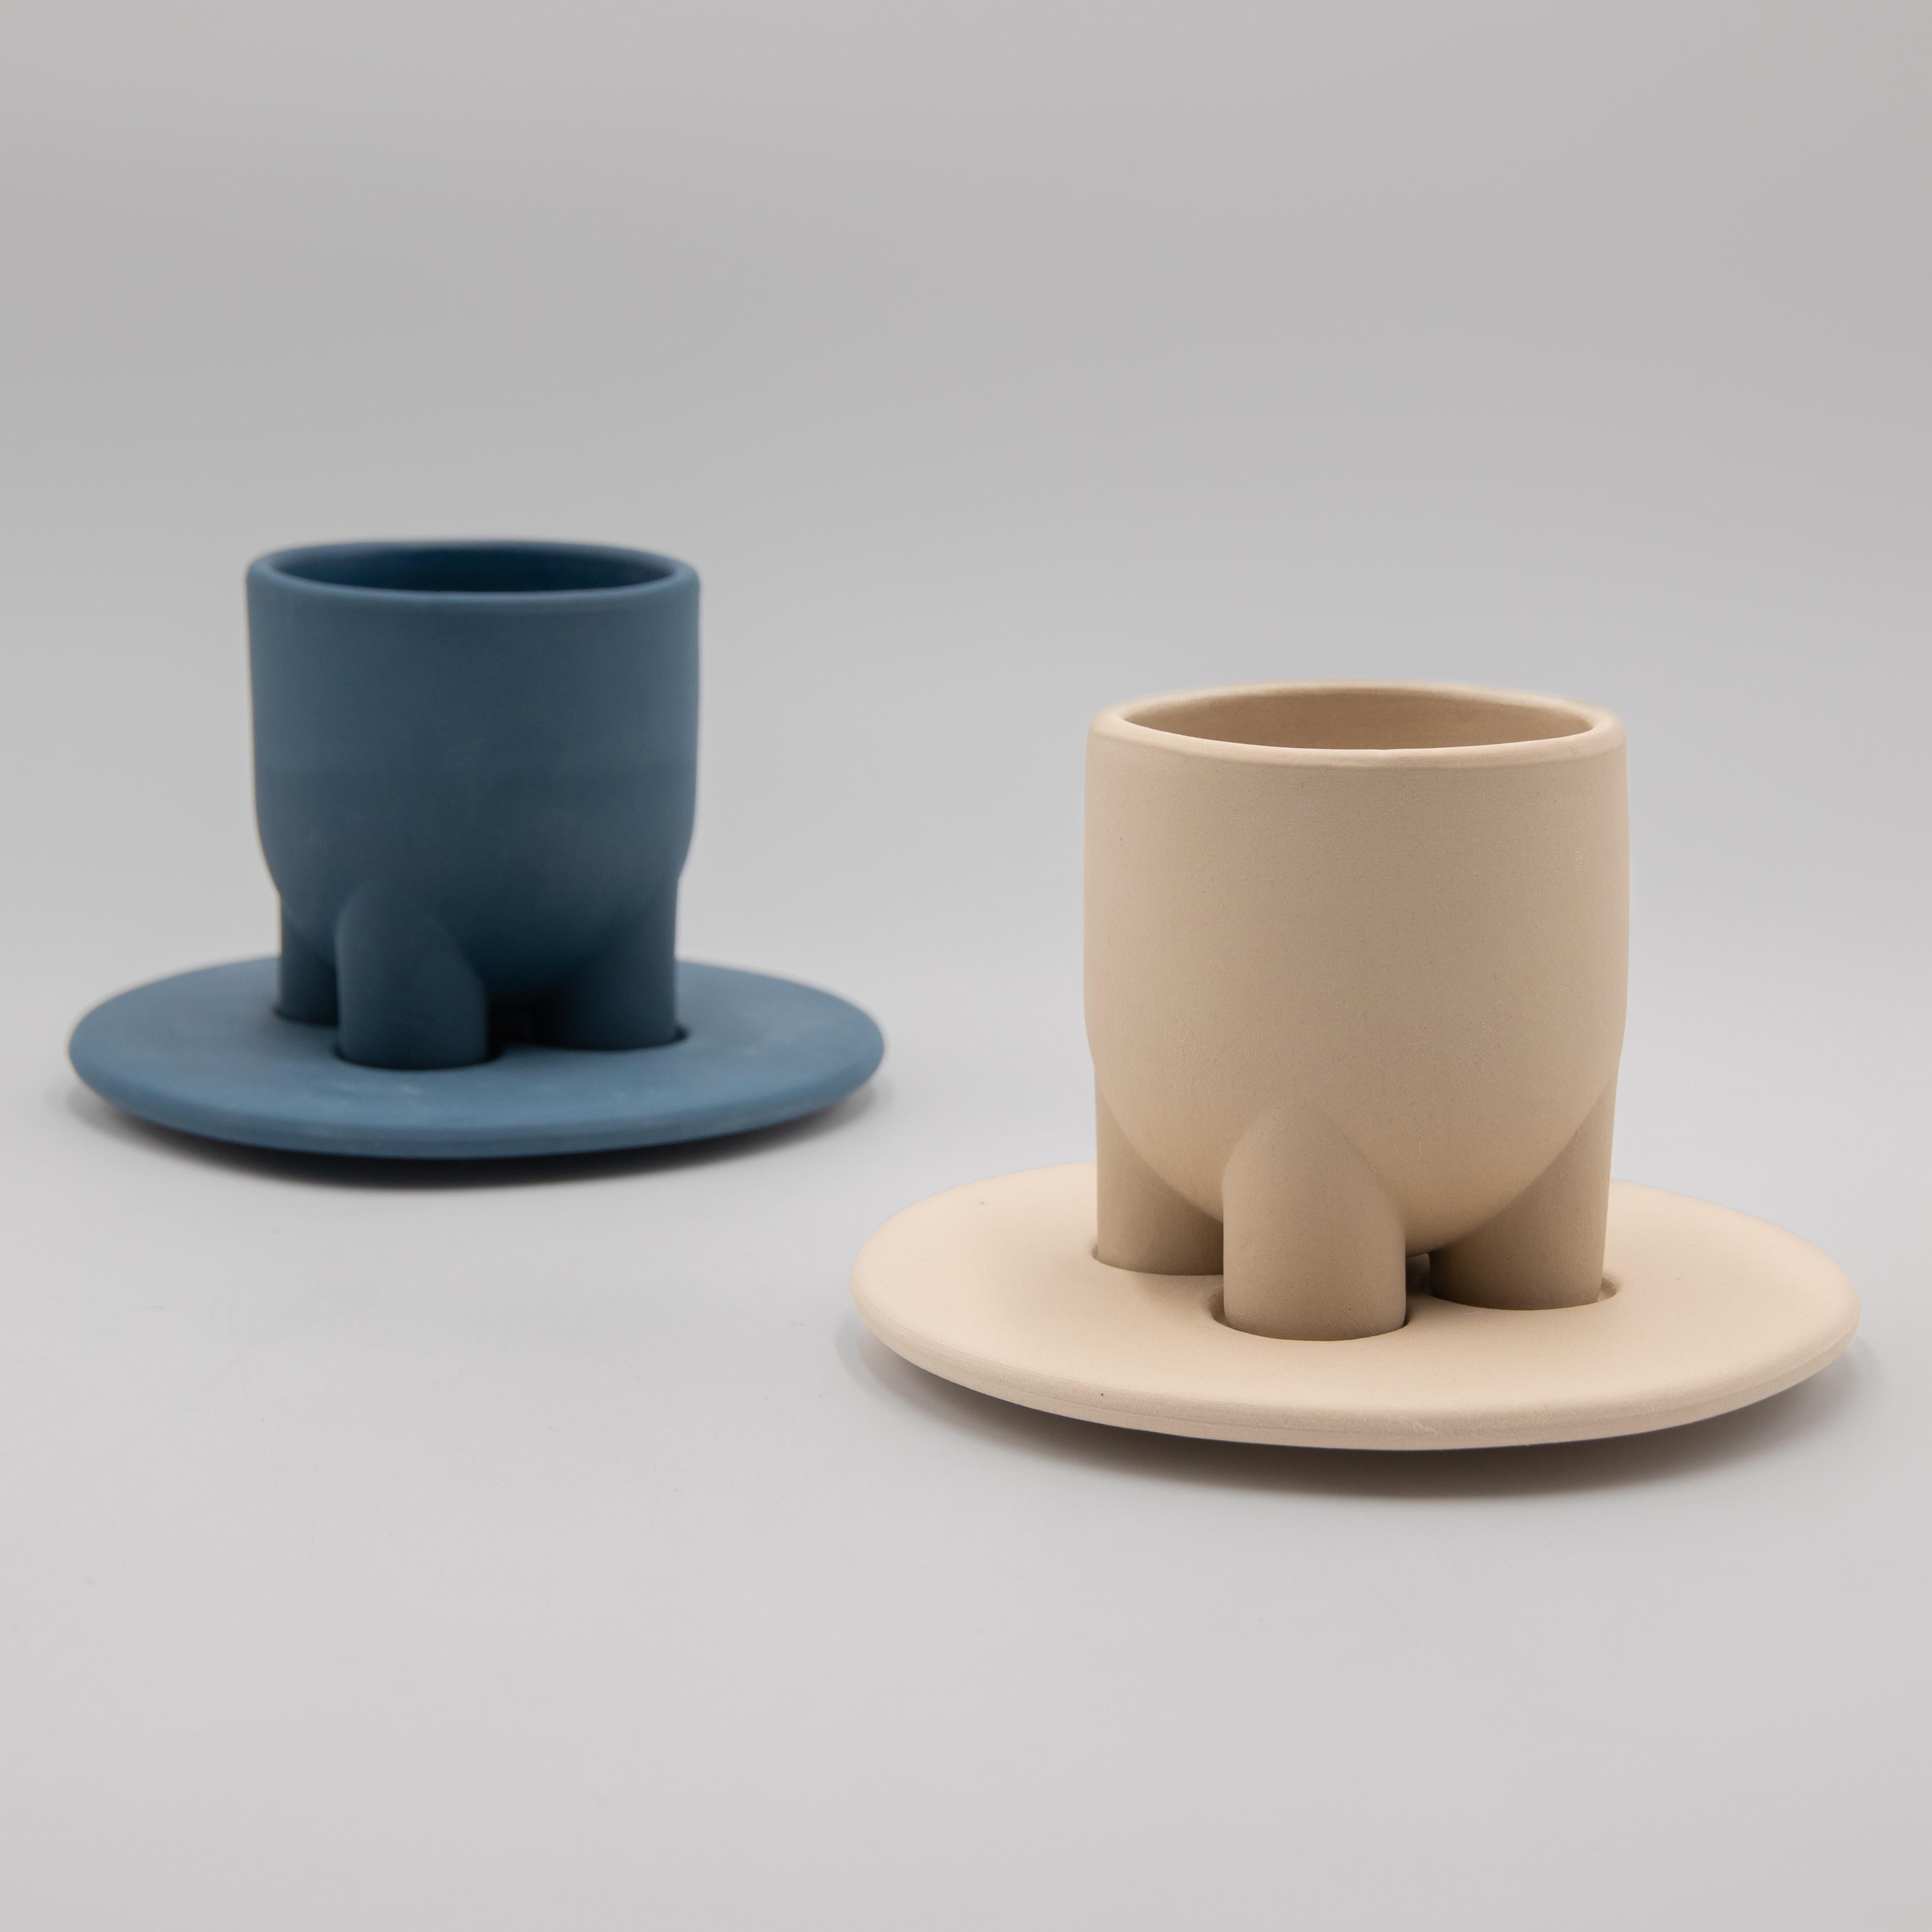 Ein modernes Set aus Kaffeetasse und Untertasse, inspiriert von den Kaffeetraditionen Italiens und Irans. Einfache geometrische Formen, klare Linien und ein wirklich einzigartiges Design machen UUUUcio zum perfekten Gefäß für den täglichen Gebrauch